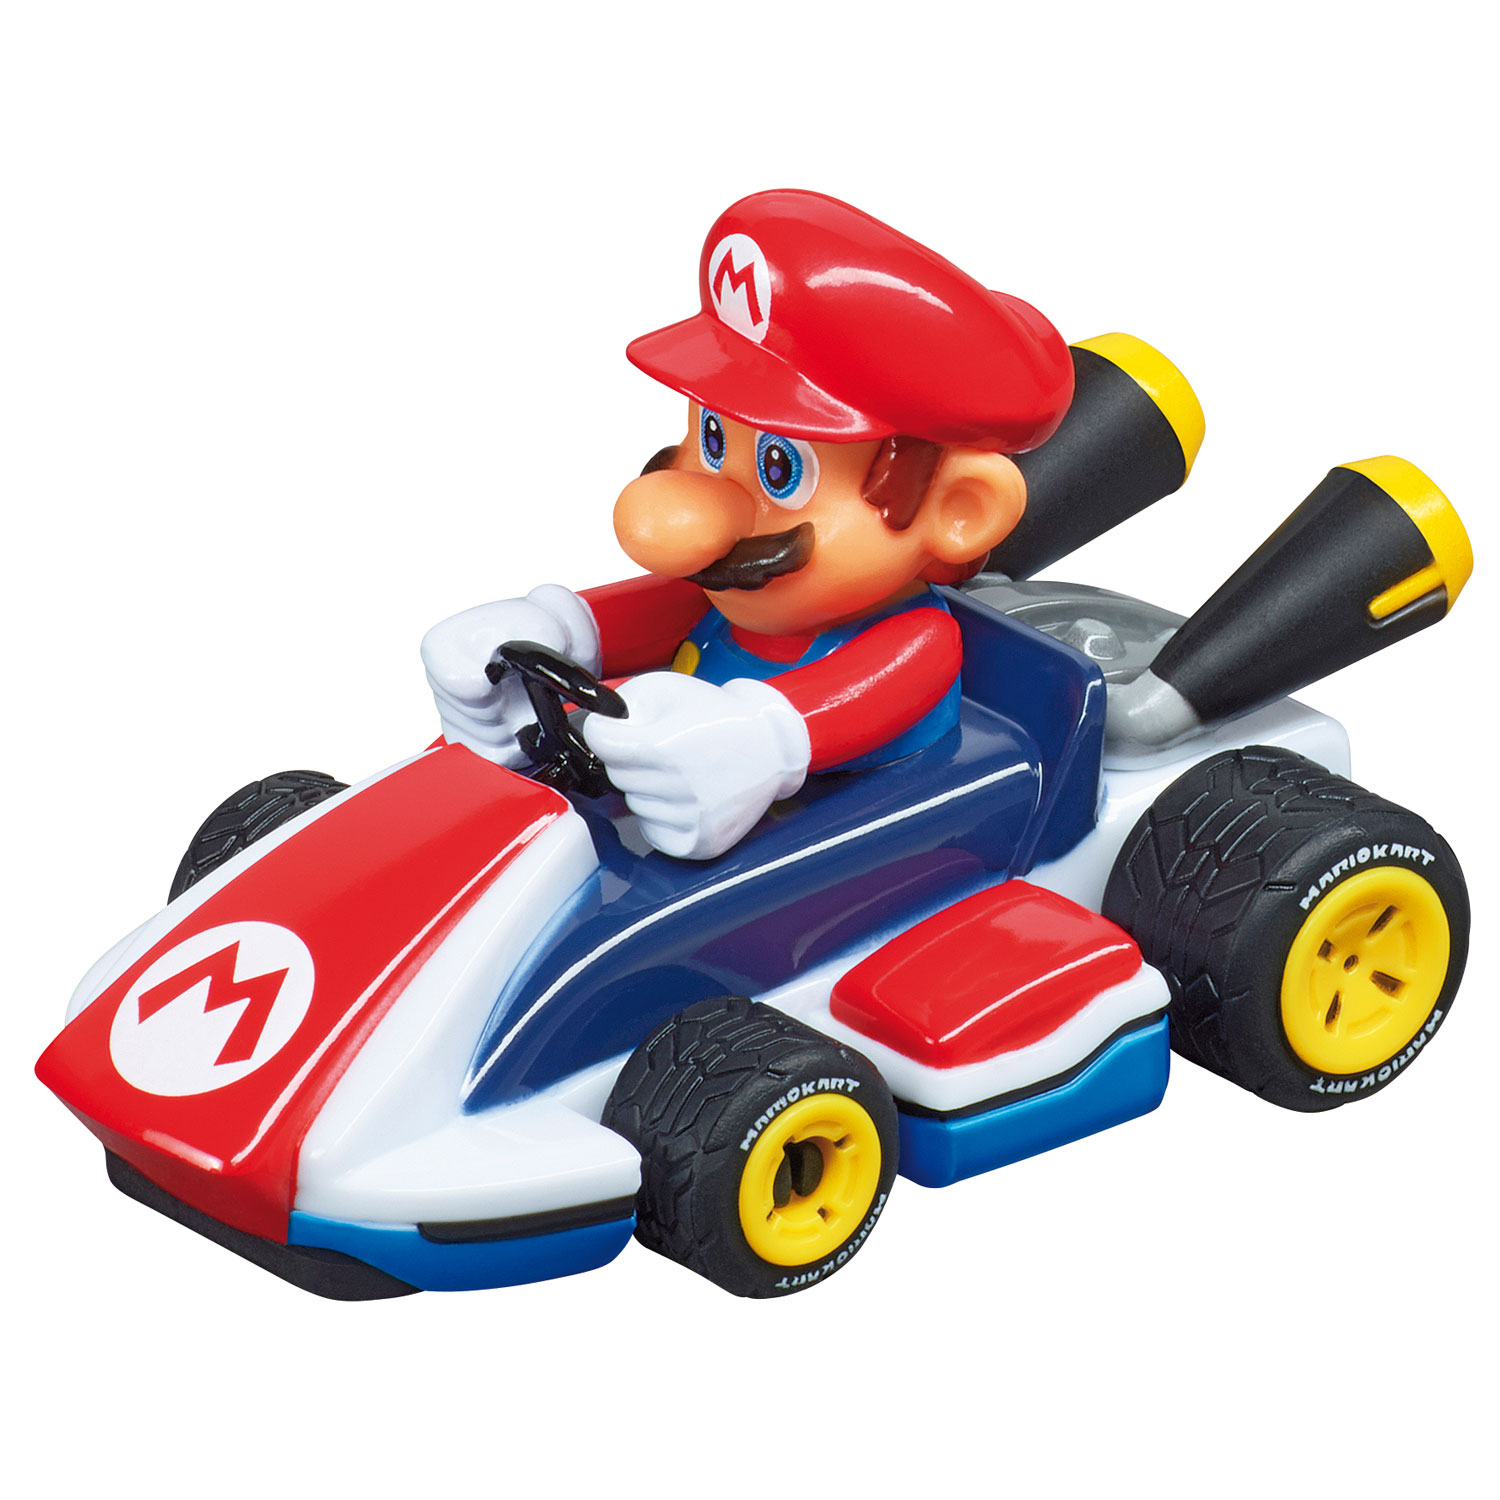 Carrera First Racebaan Mario Kart Thimble Toys 2859